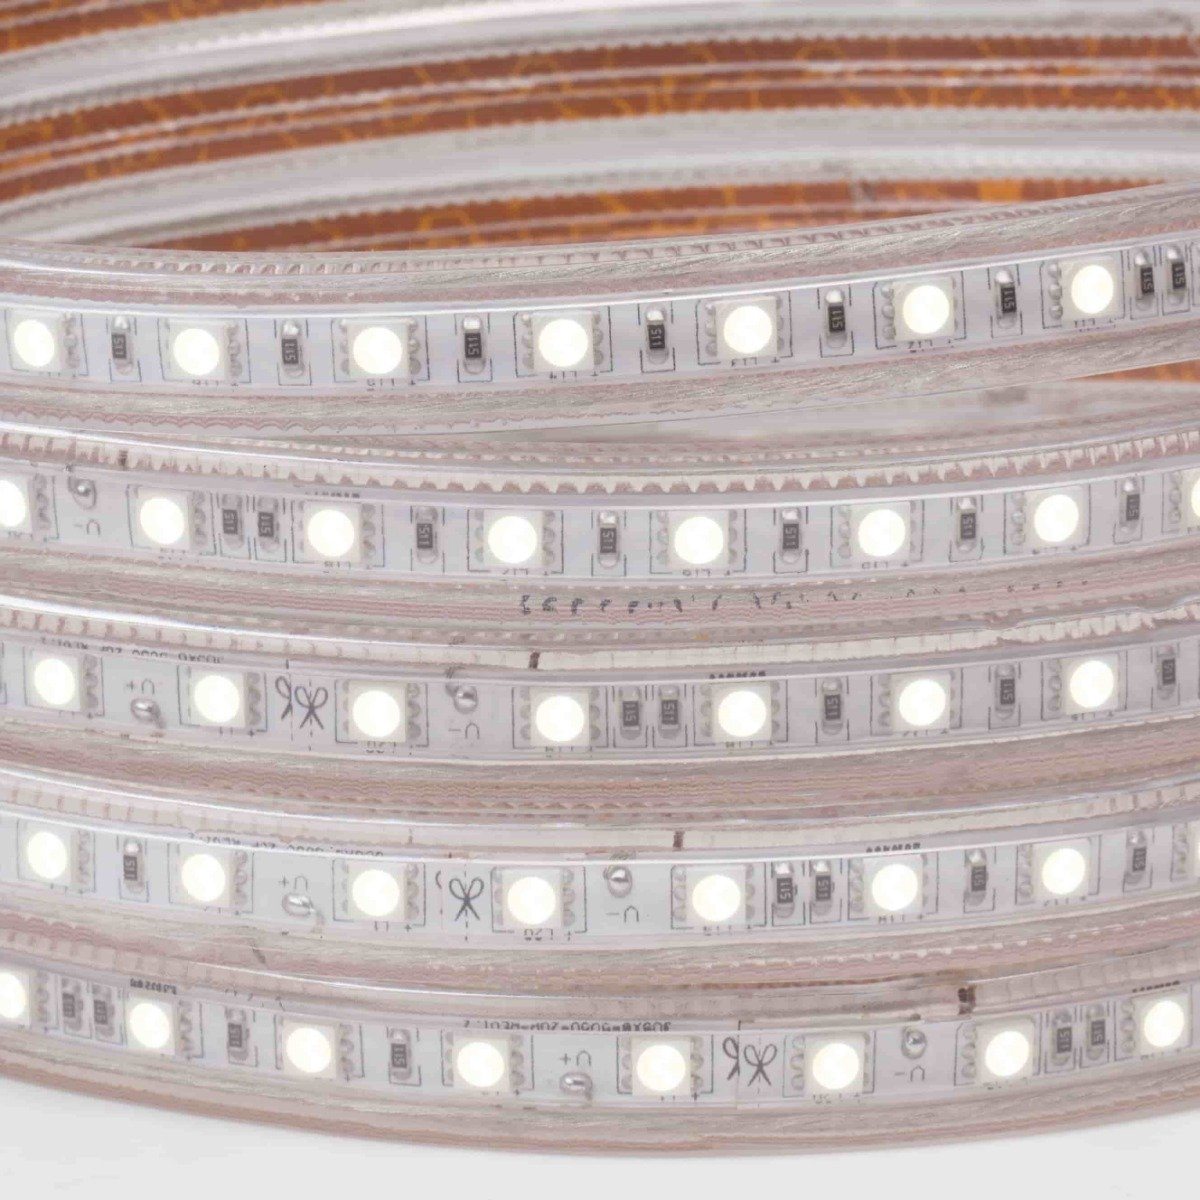 illuminated 120v led strip light reel with visible white chips 5500K tone